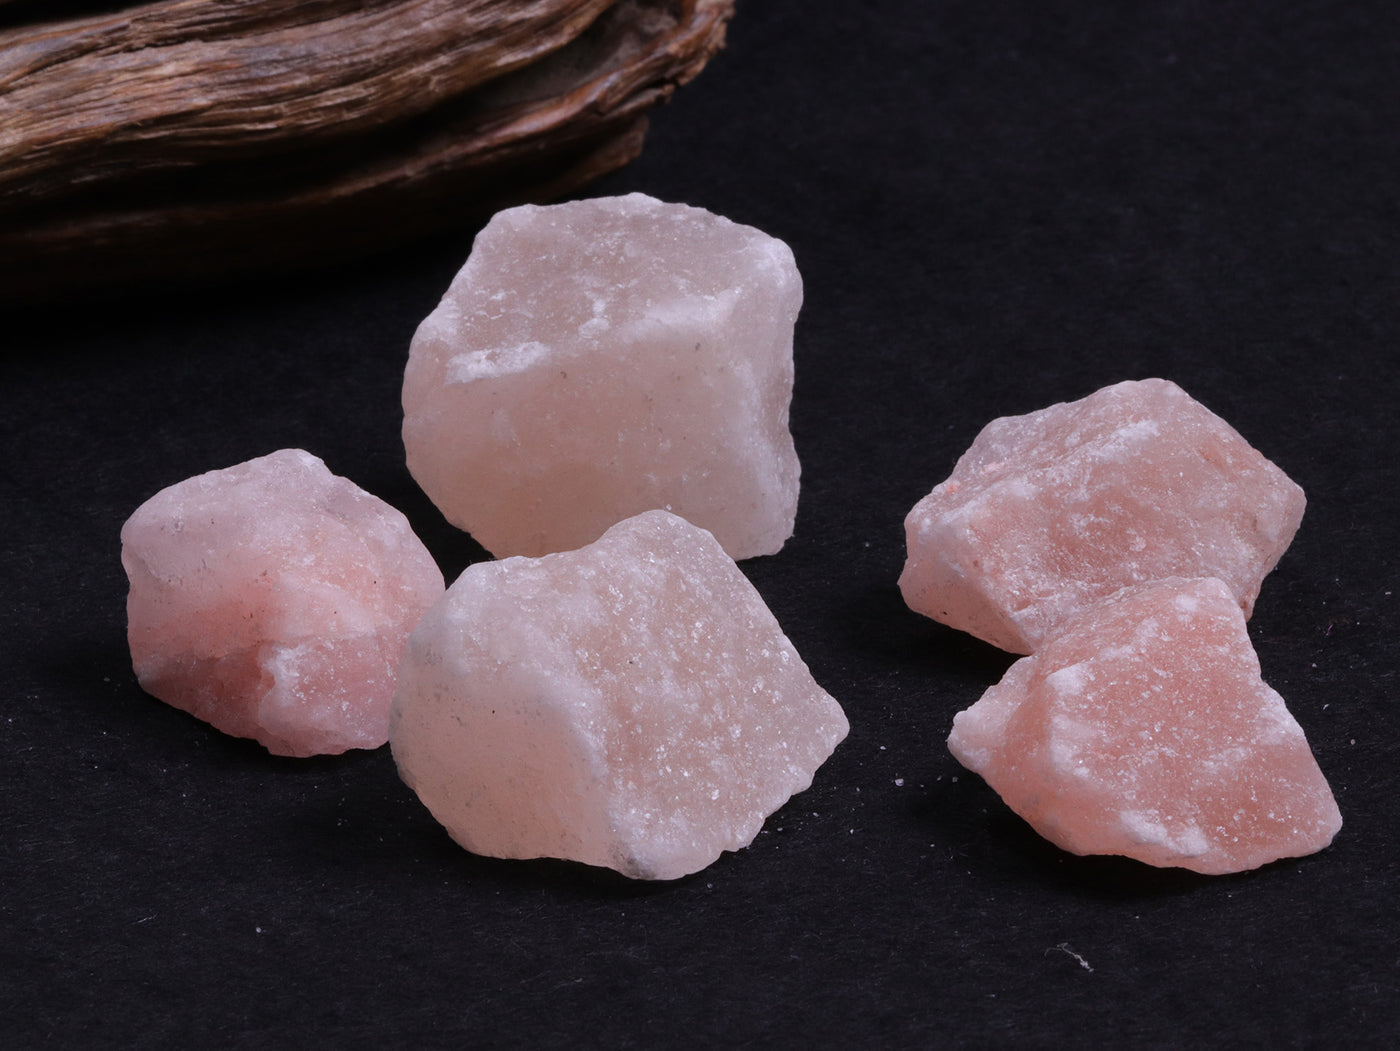 Himalayan Pink Rock Salt Collection